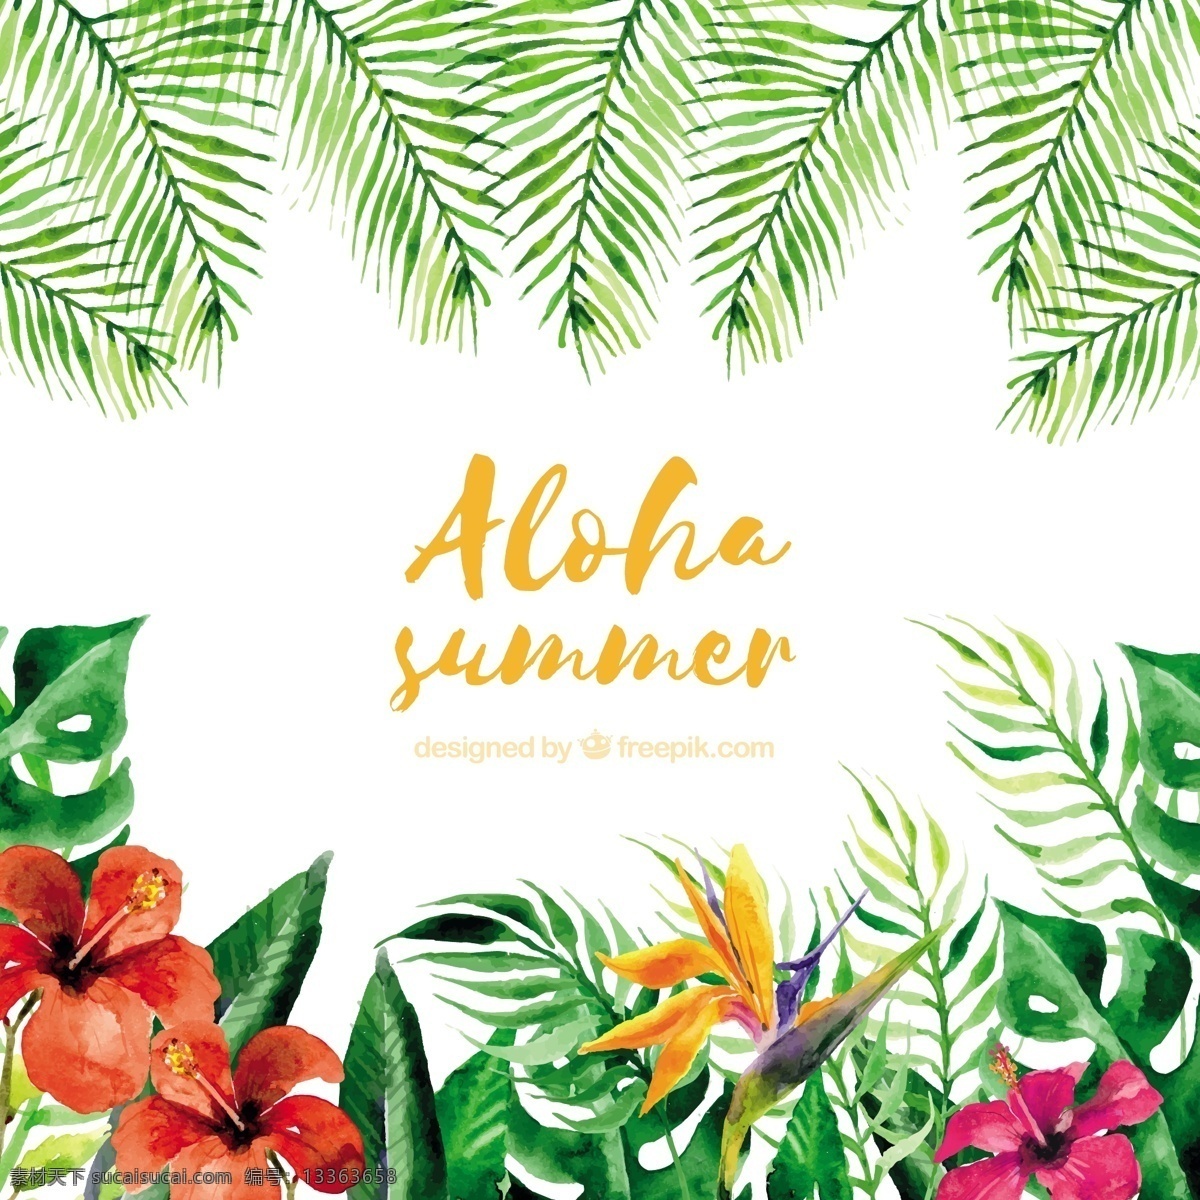 水彩画 aloha 夏季 背景 植物 花朵 花卉 水彩 自然 花卉背景 海滩 水彩花卉 水彩背景 树叶 热带 自然背景 棕榈树 夏季海滩 夏威夷